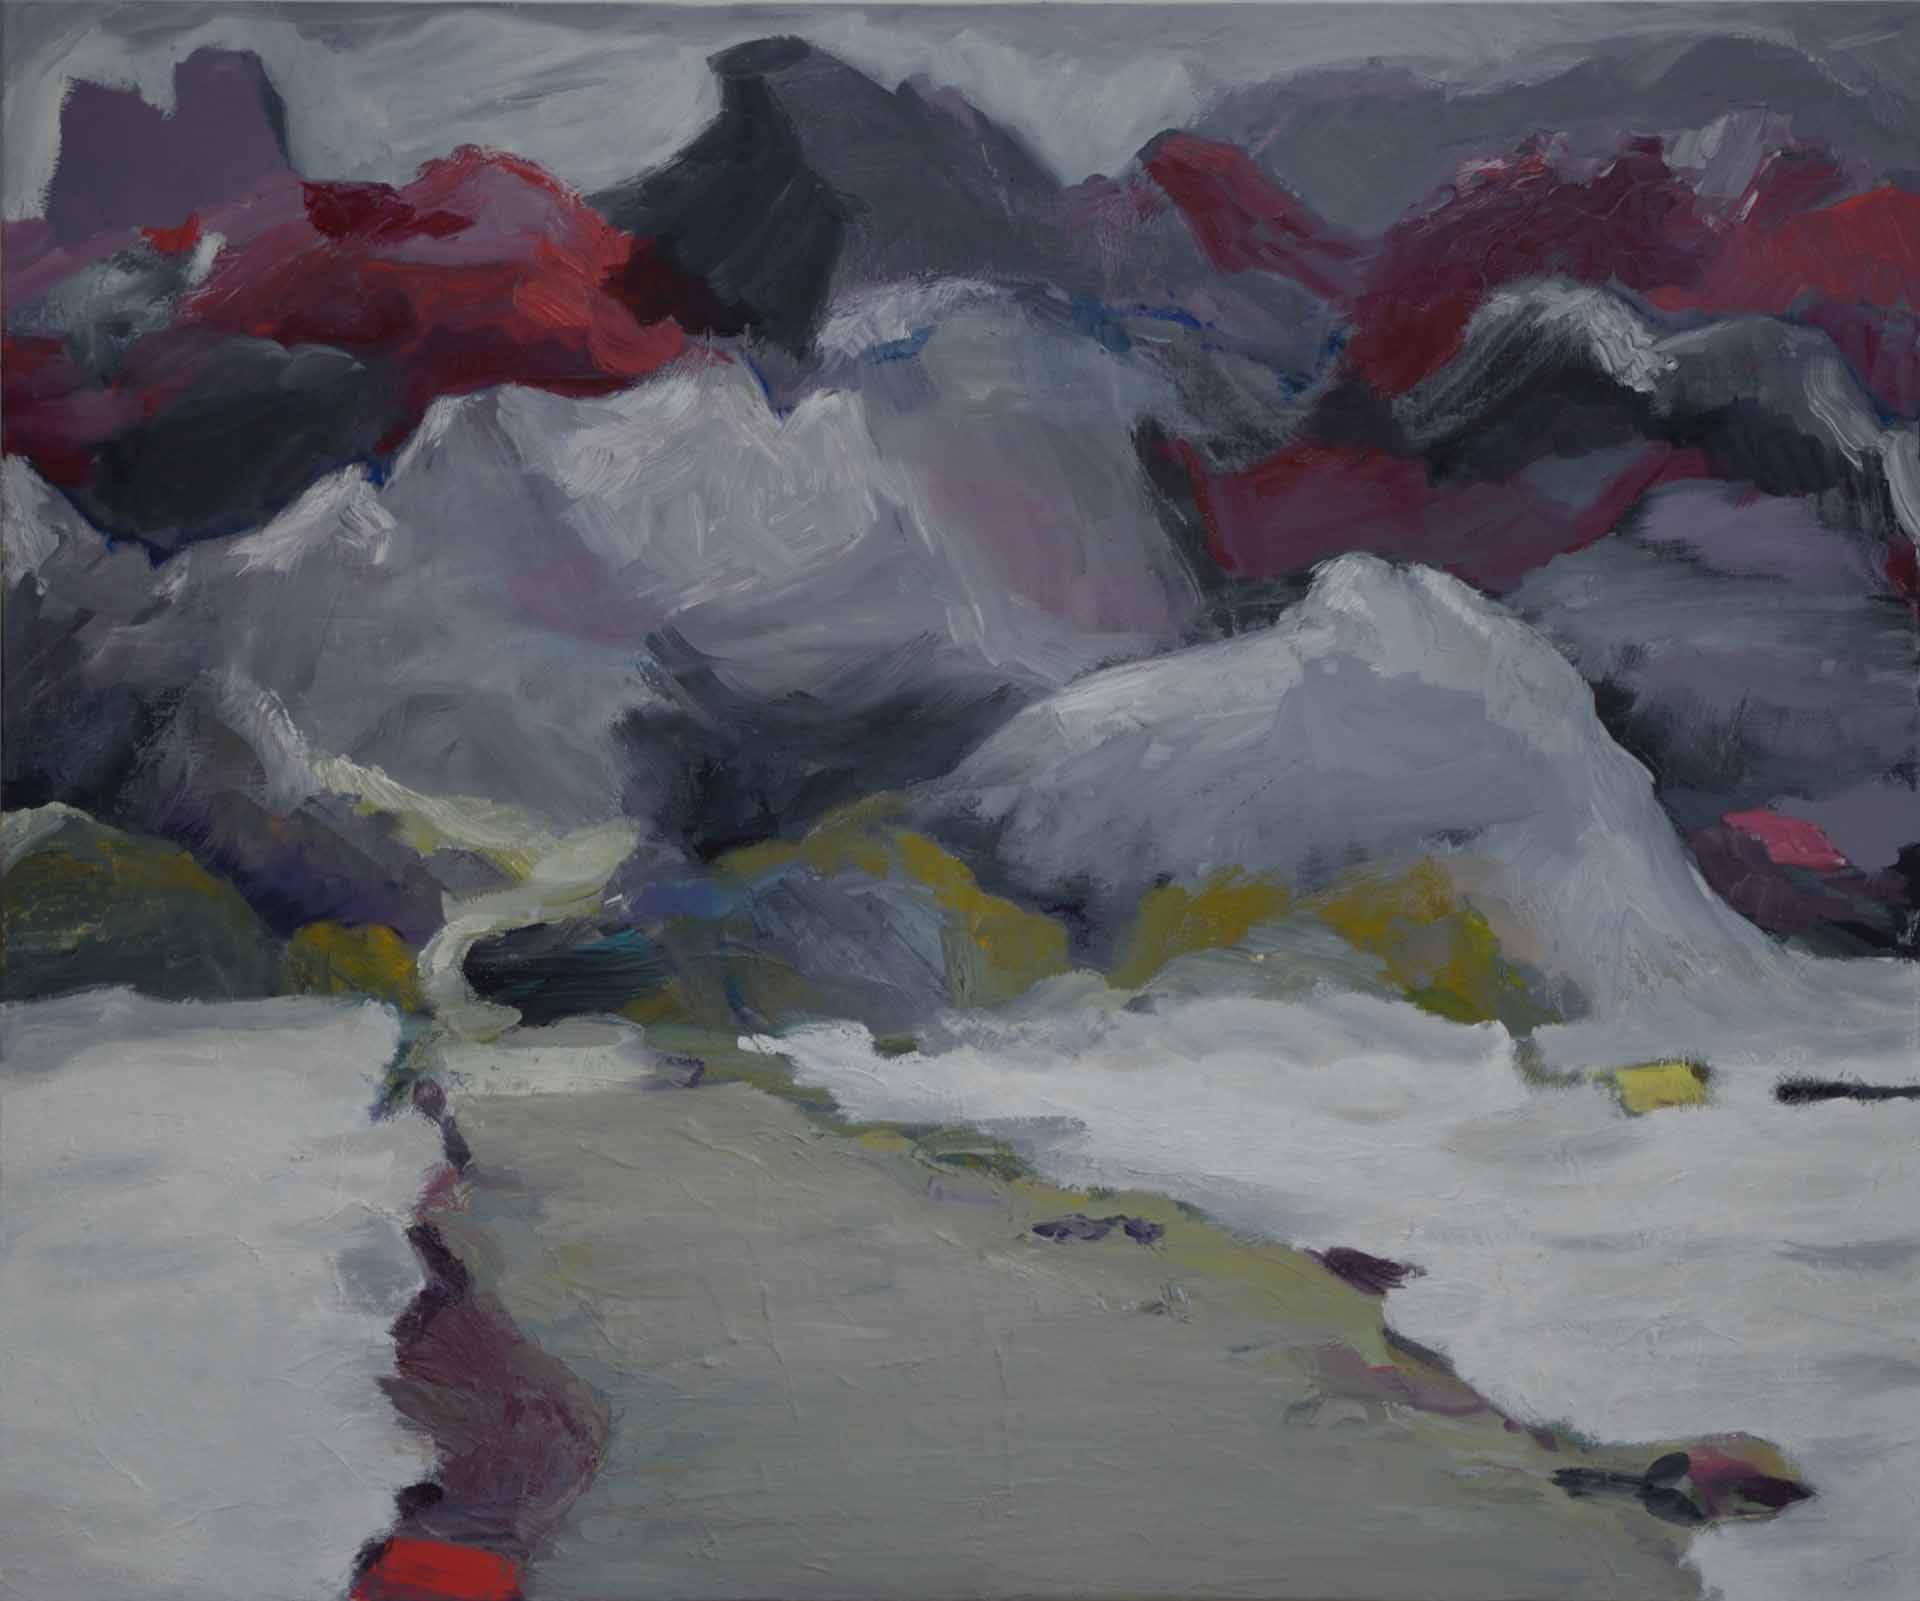 Sabine Beckmann, Valley, oil on linen, 100 x 120 cm, 2012